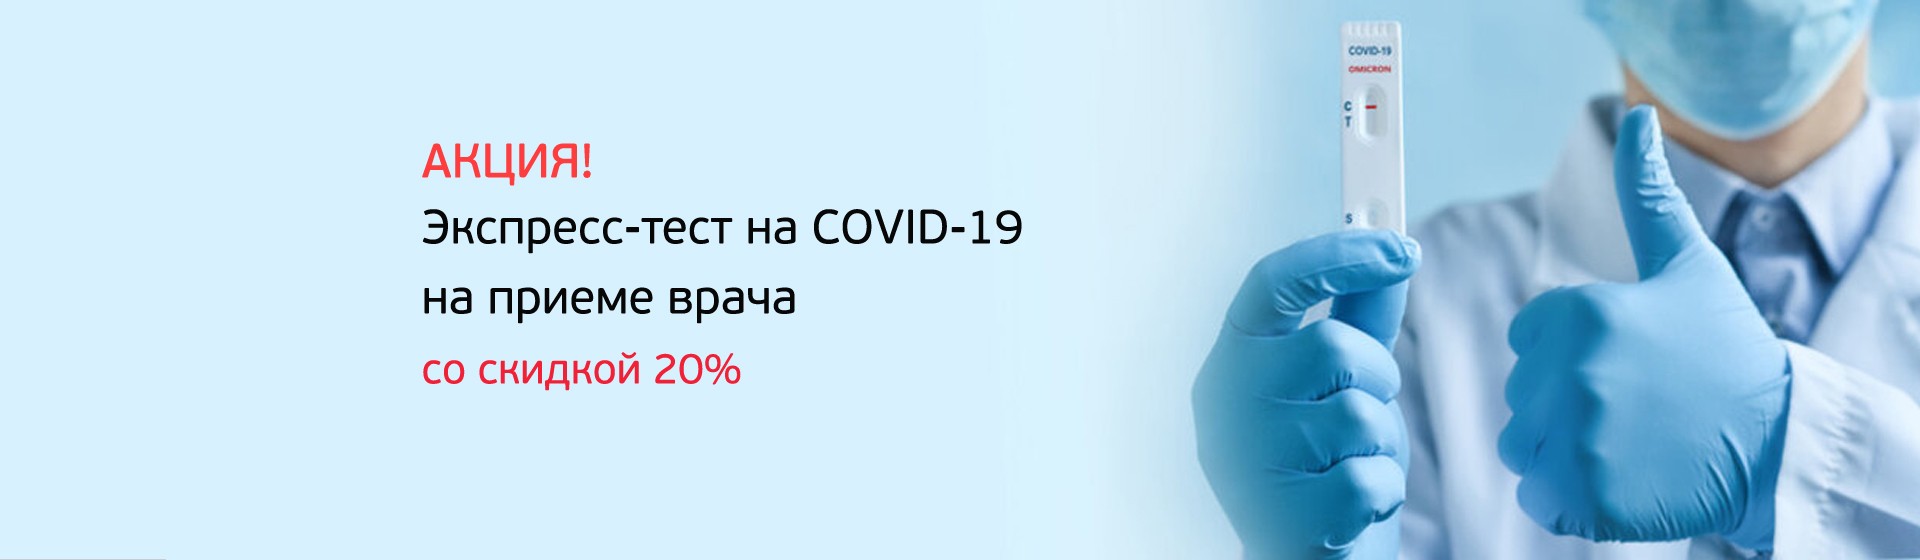 Скидка 20% на экспресс-тест на COVID-19 при выполнении на приеме врача